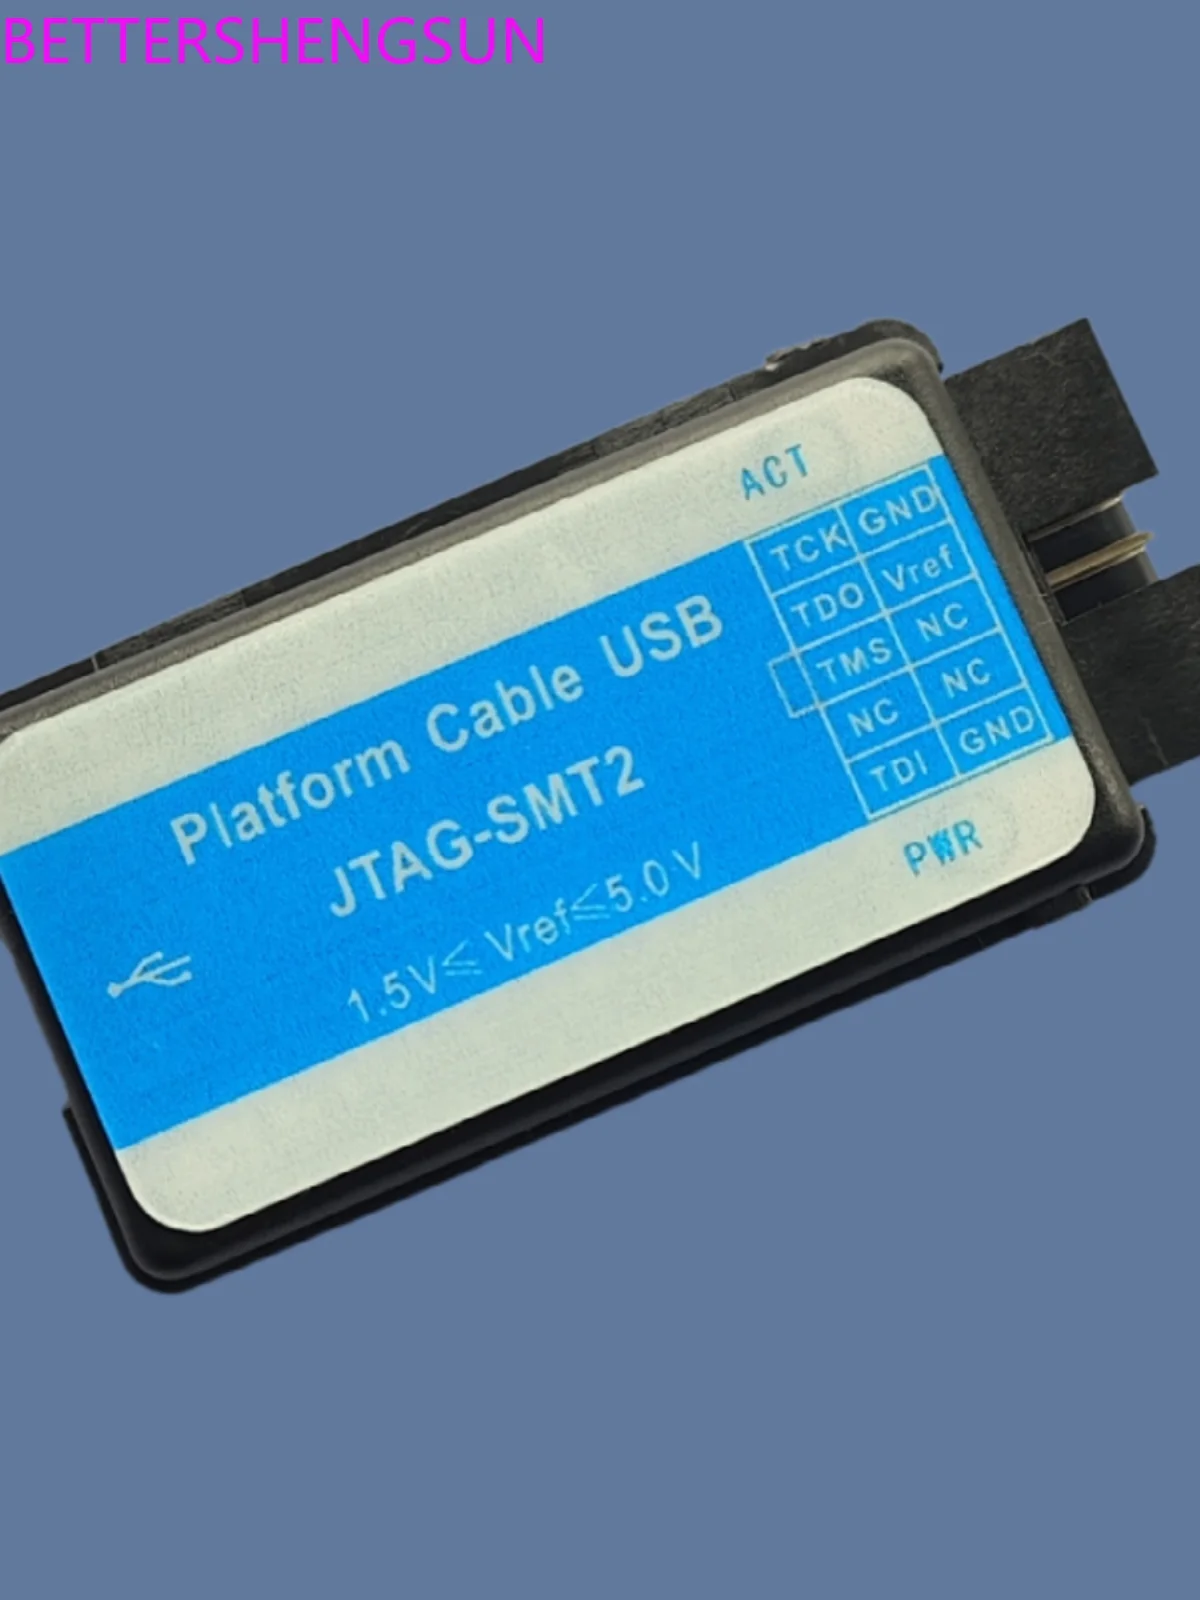 

Загрузчик JTAG-SMT2 кабель FPGA HS отладчик